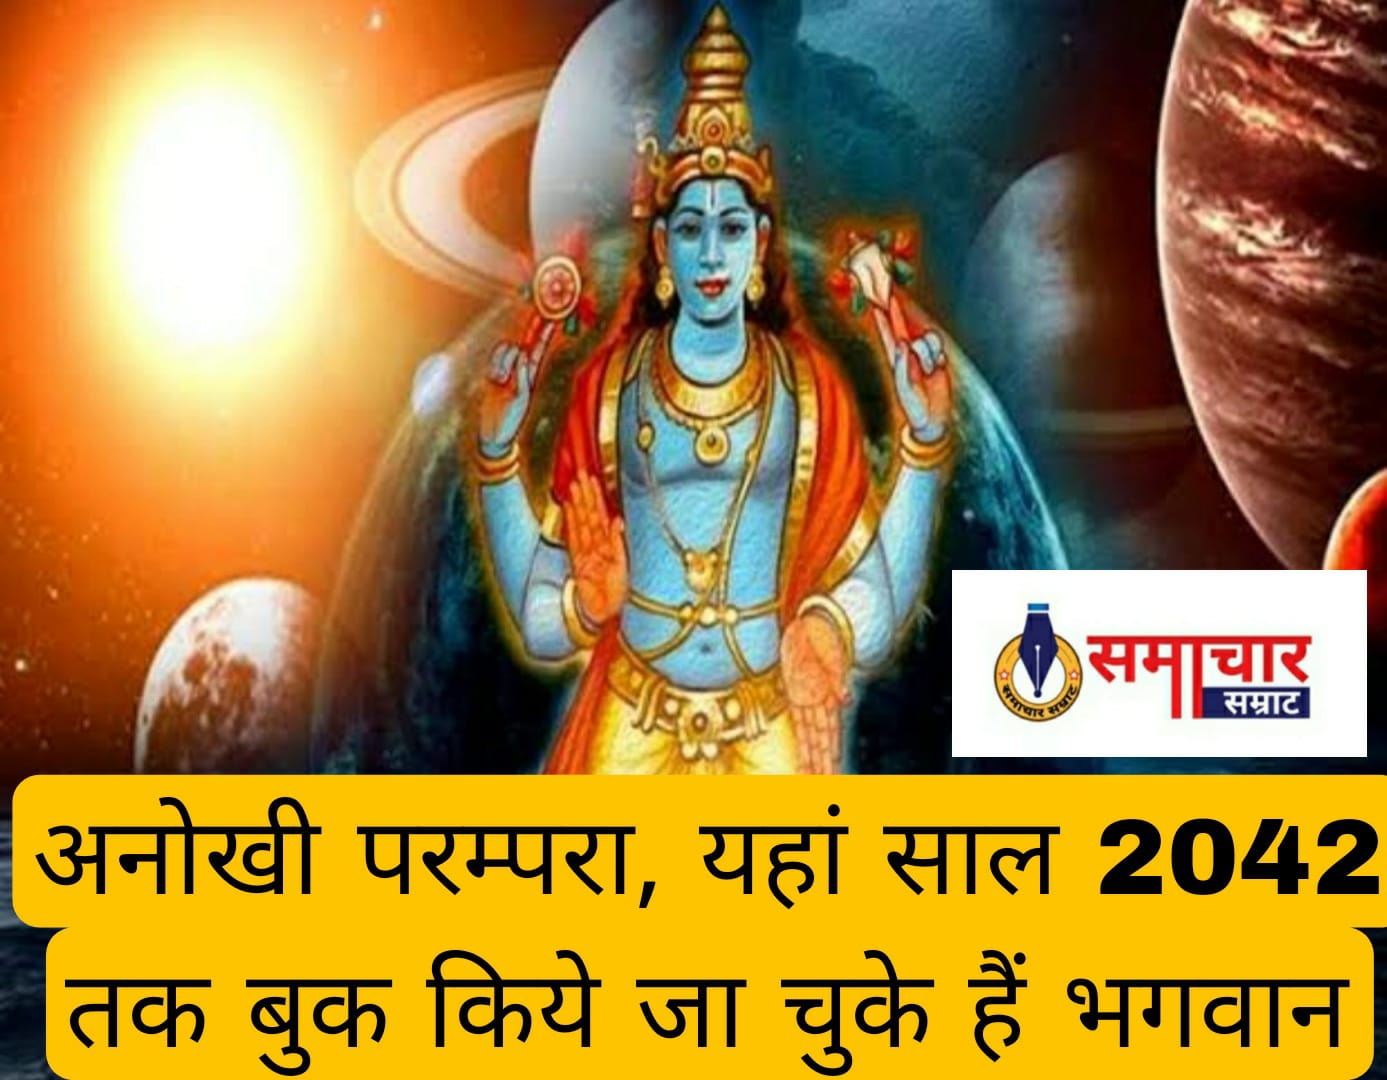 Dharm adhyatm : अनोखी परम्परा, यहां साल 2042 तक बुक किये जा चुके हैं भगवान